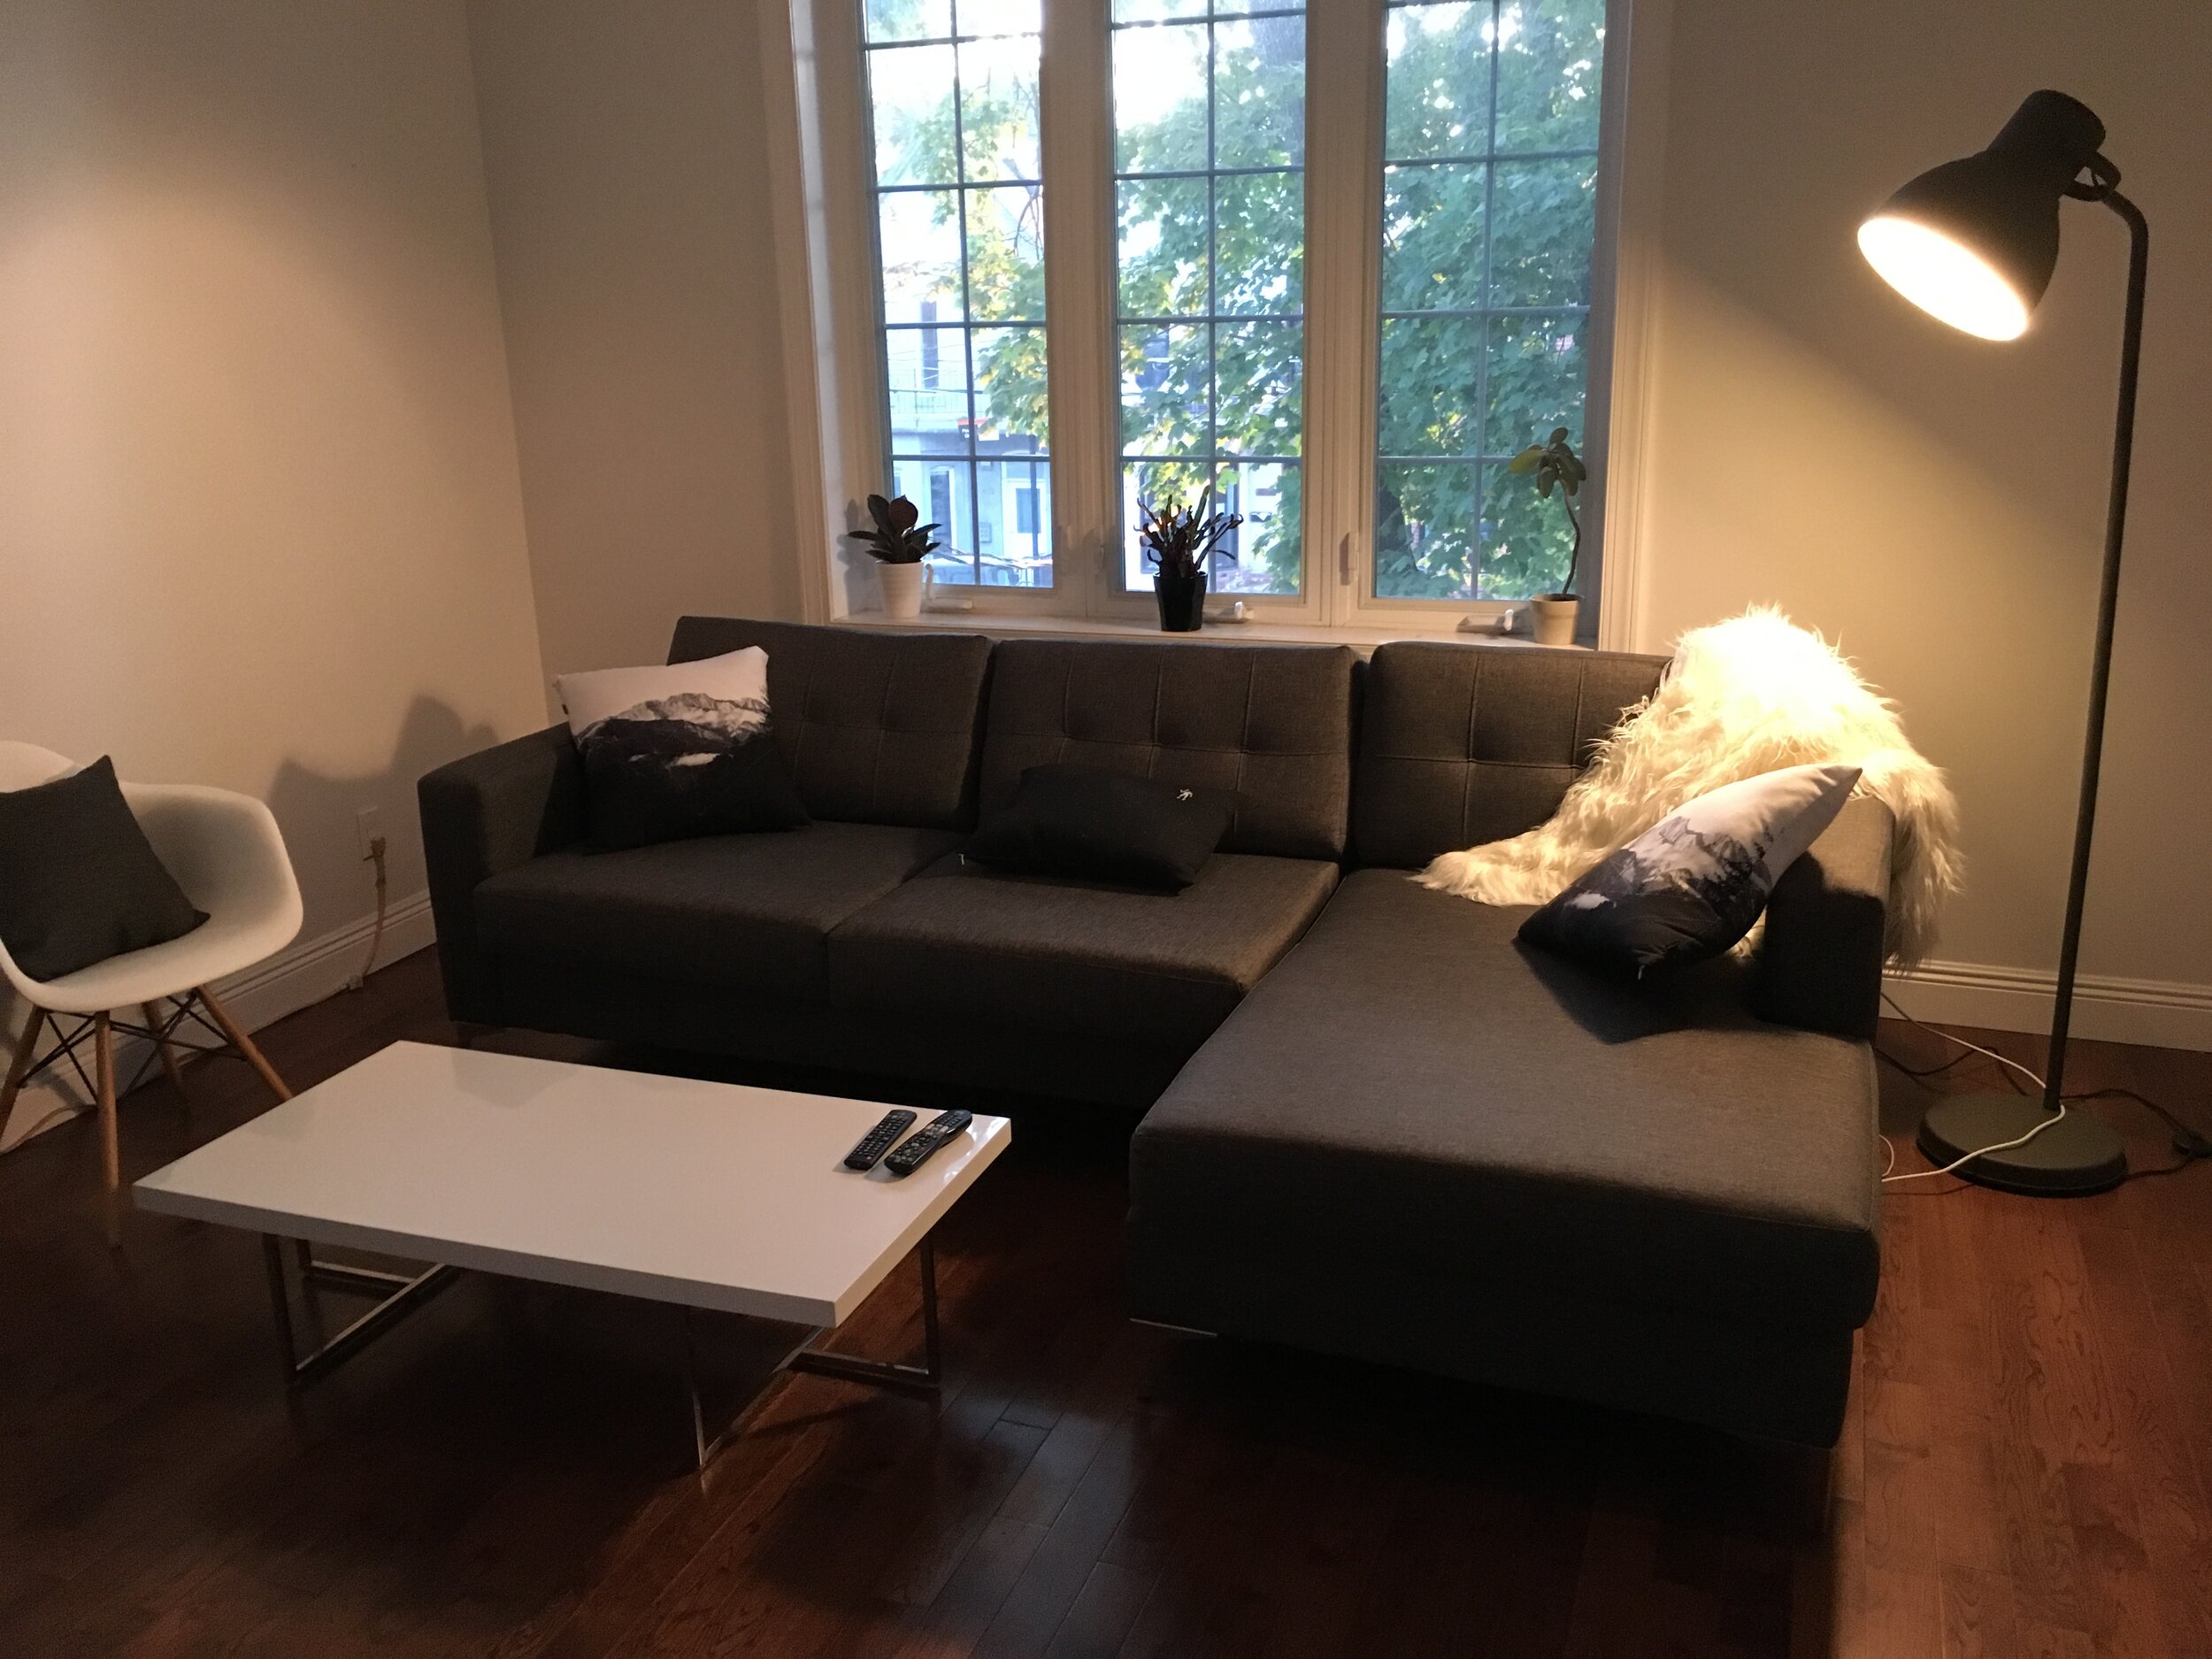 2 - living room.JPG